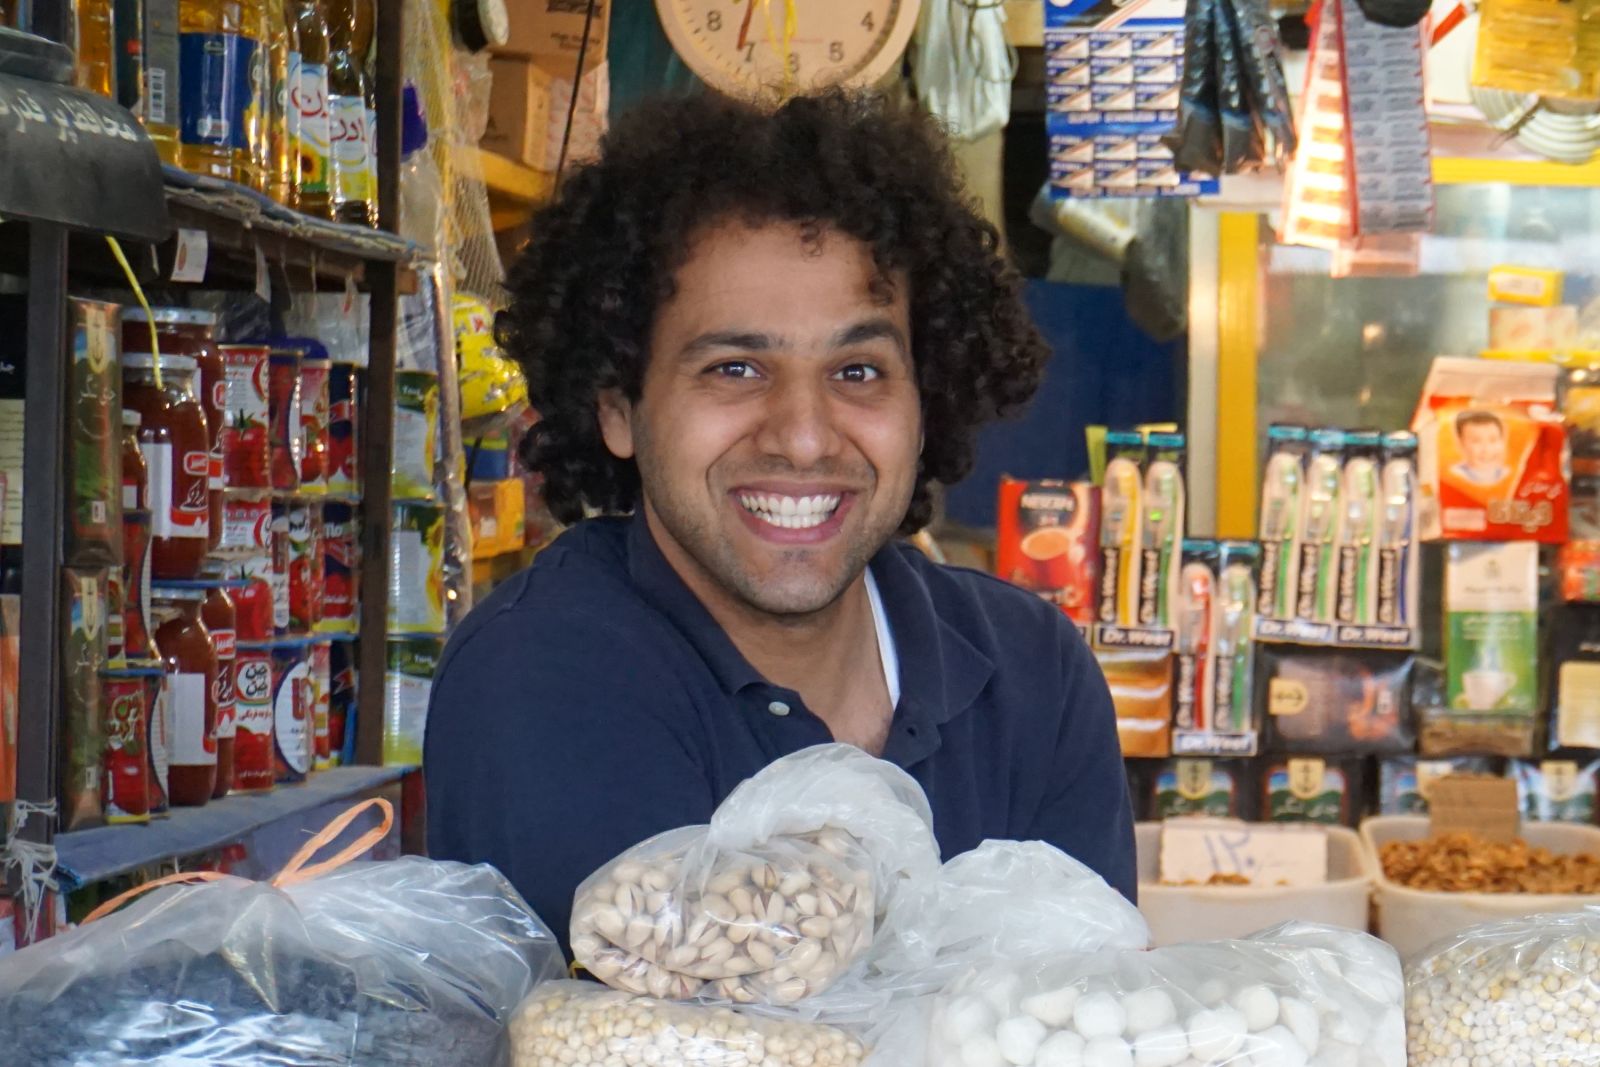 Verkäufer auf dem Markt… oder Iraner, die Weltermeister in Sachen Freundlichkeit